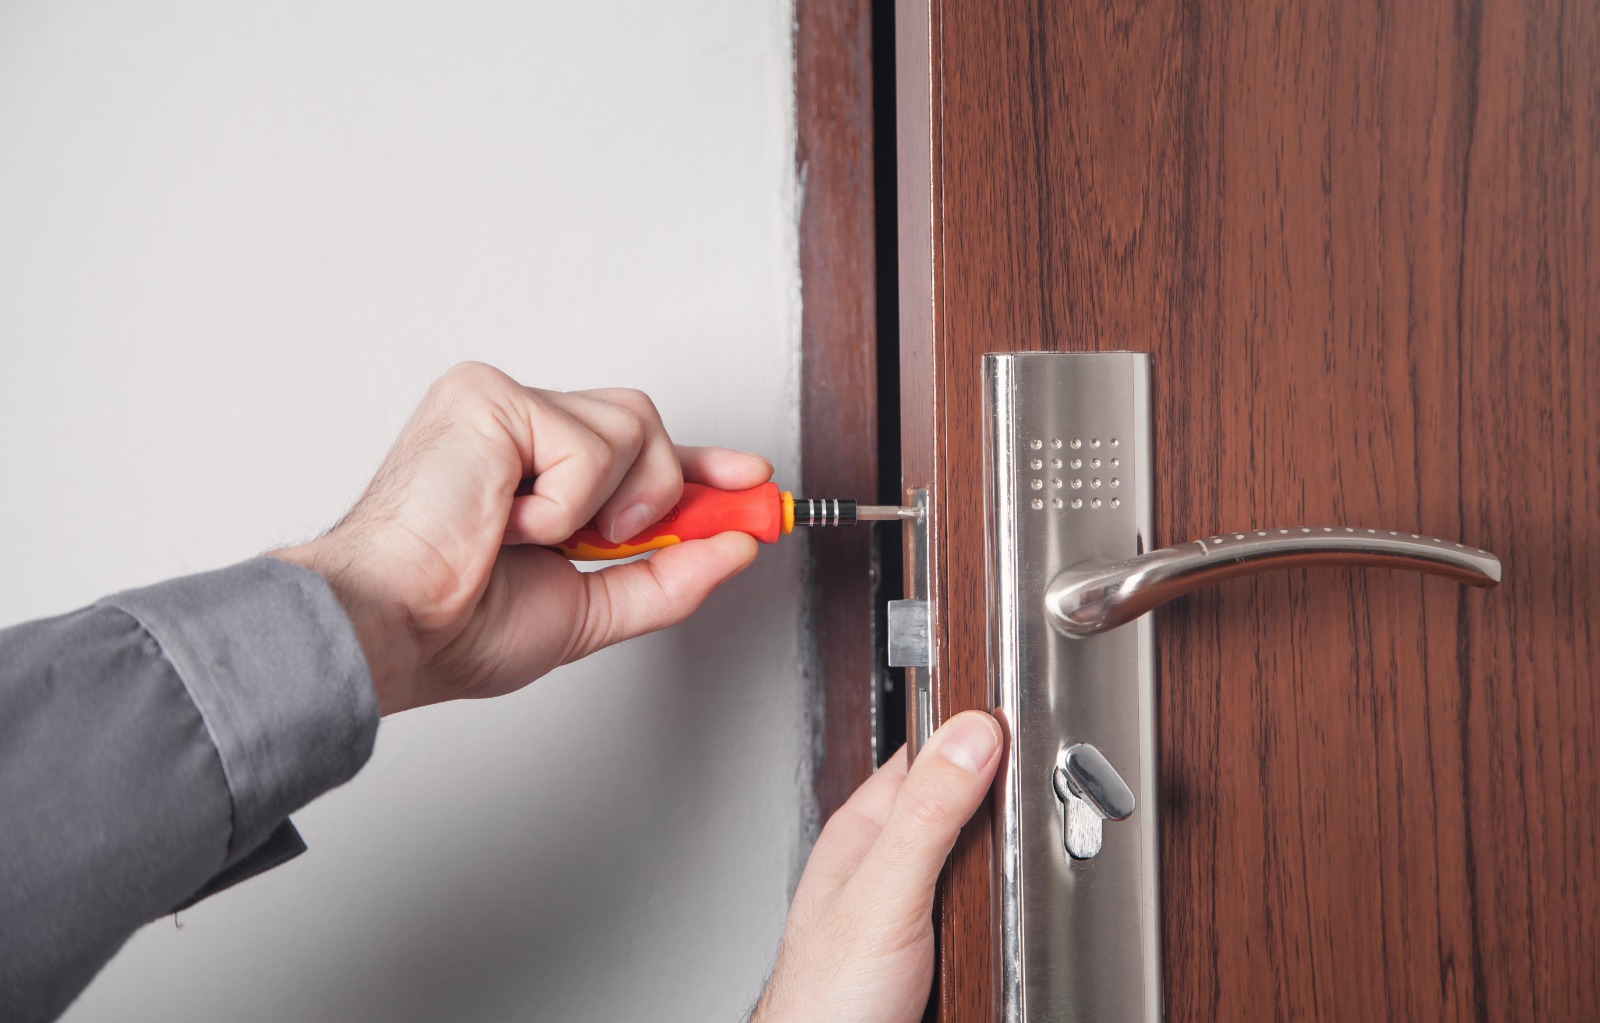 Geaccepteerd Namens zoeken Sluitwerk van de deur: laten vervangen of zelf doen? Tips & advies!